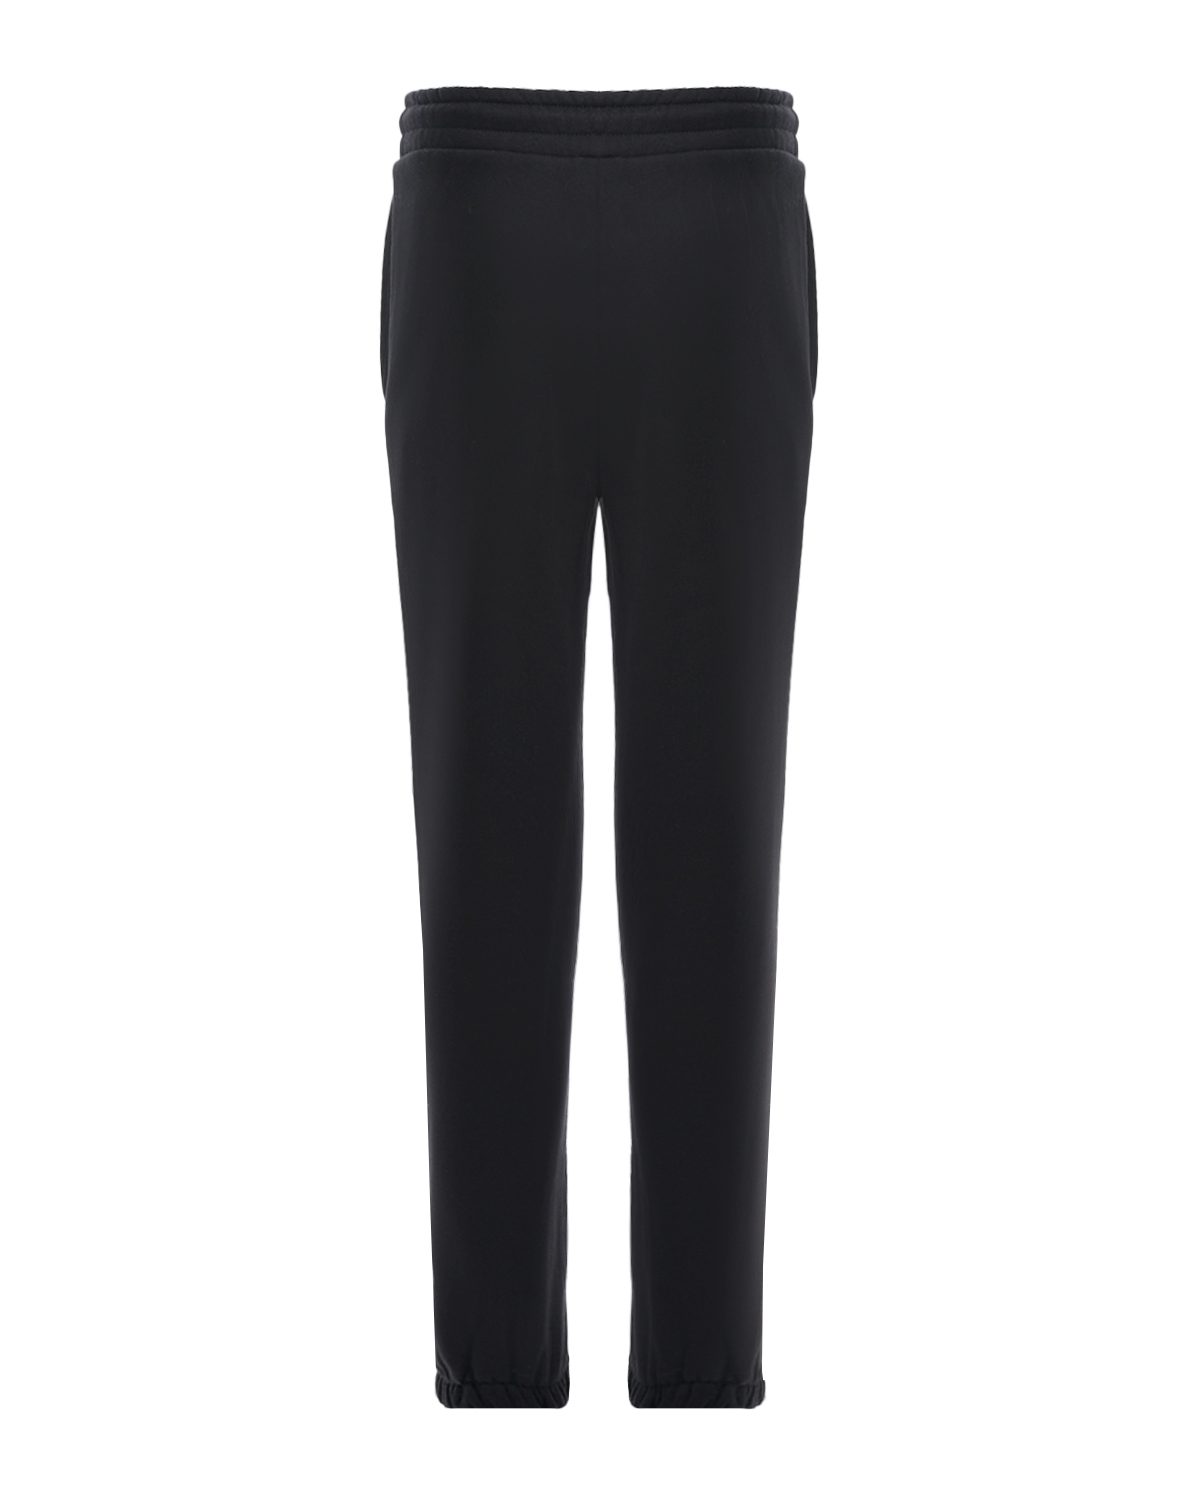 Черные утепленные спортивные брюки Dan Maralex детские, размер 128, цвет черный - фото 2